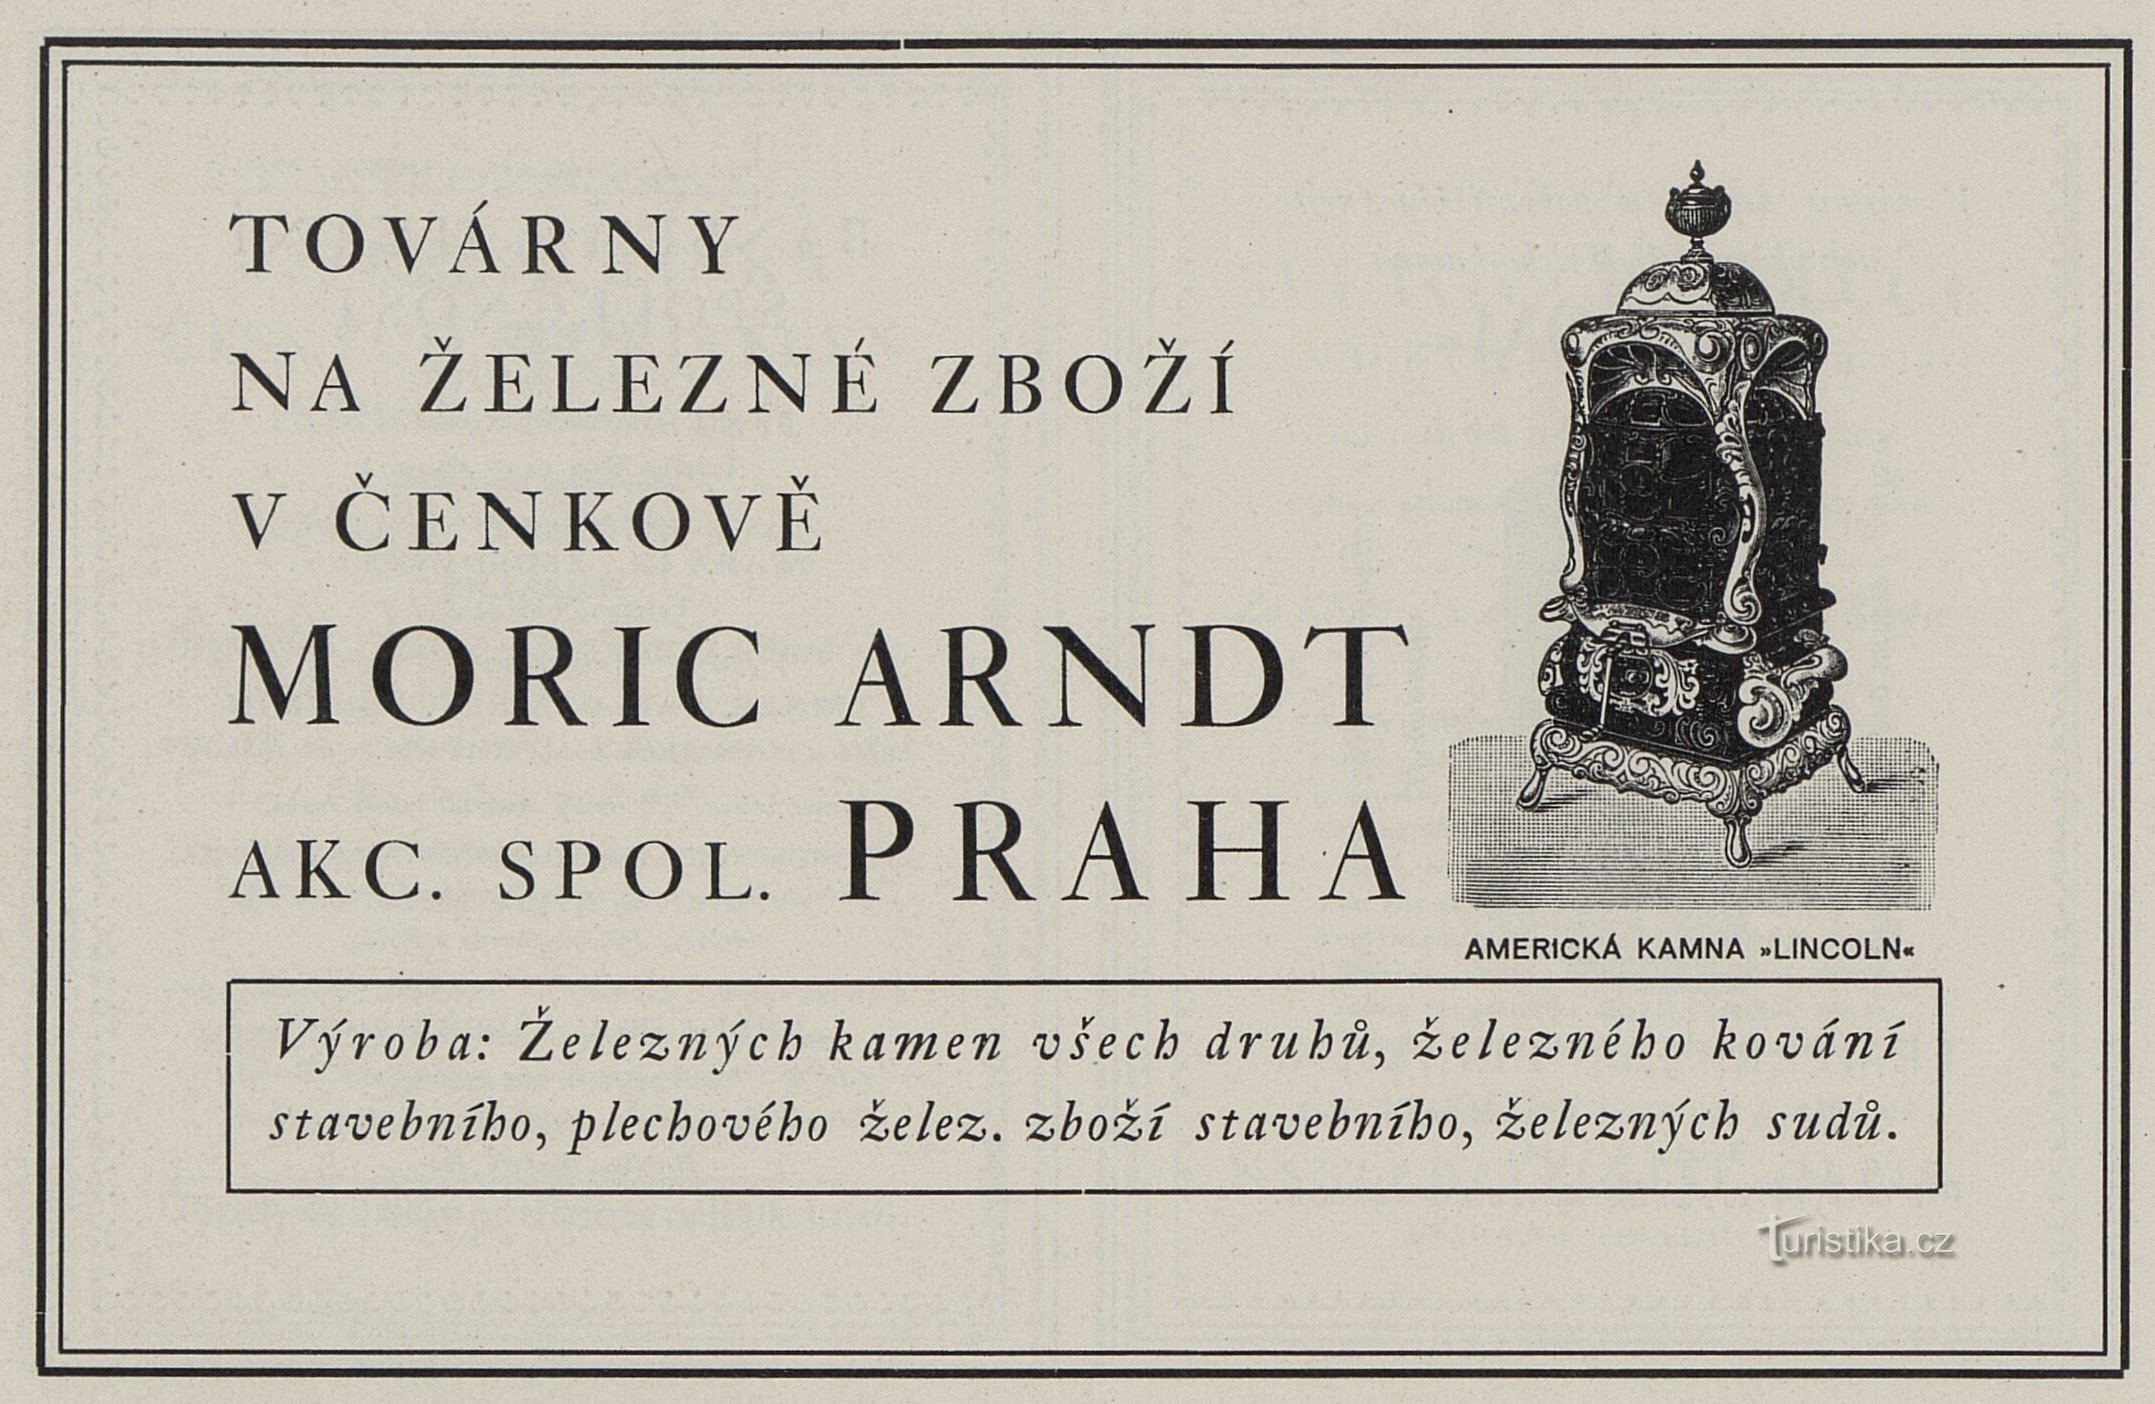 En annons från 1925 för Moric Arndt